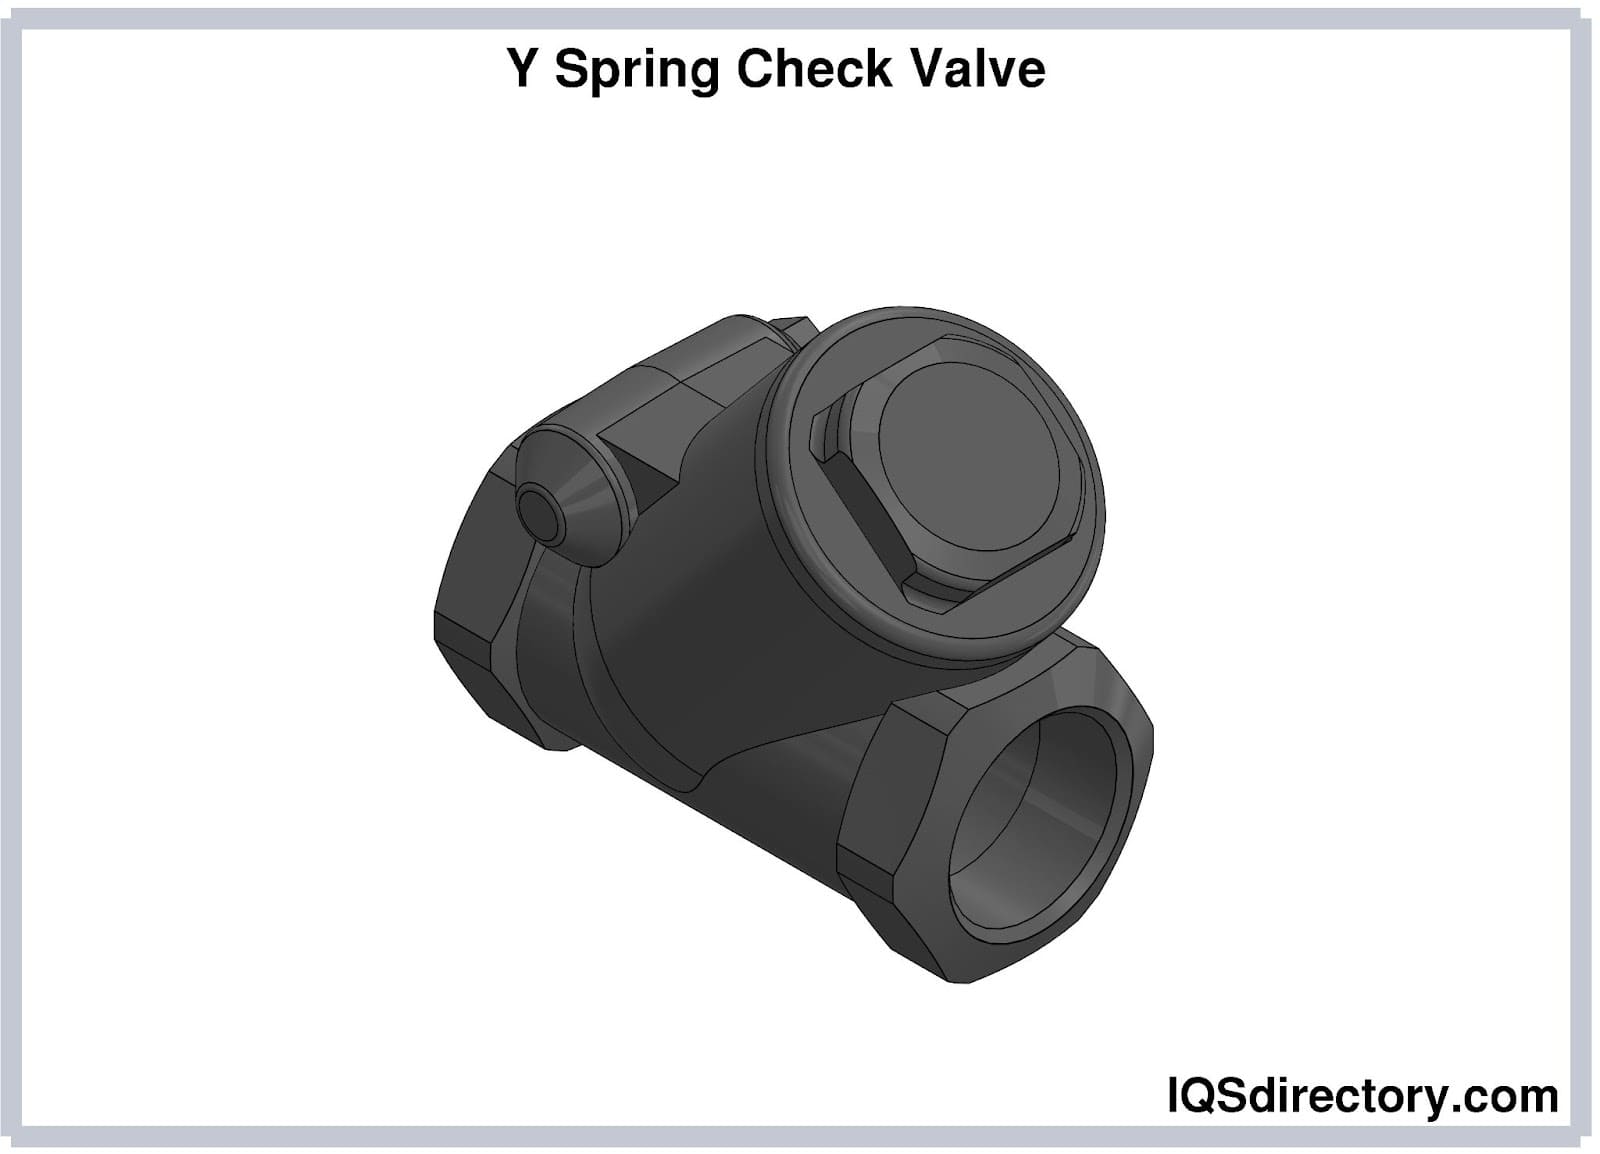 Y Spring Check Valve